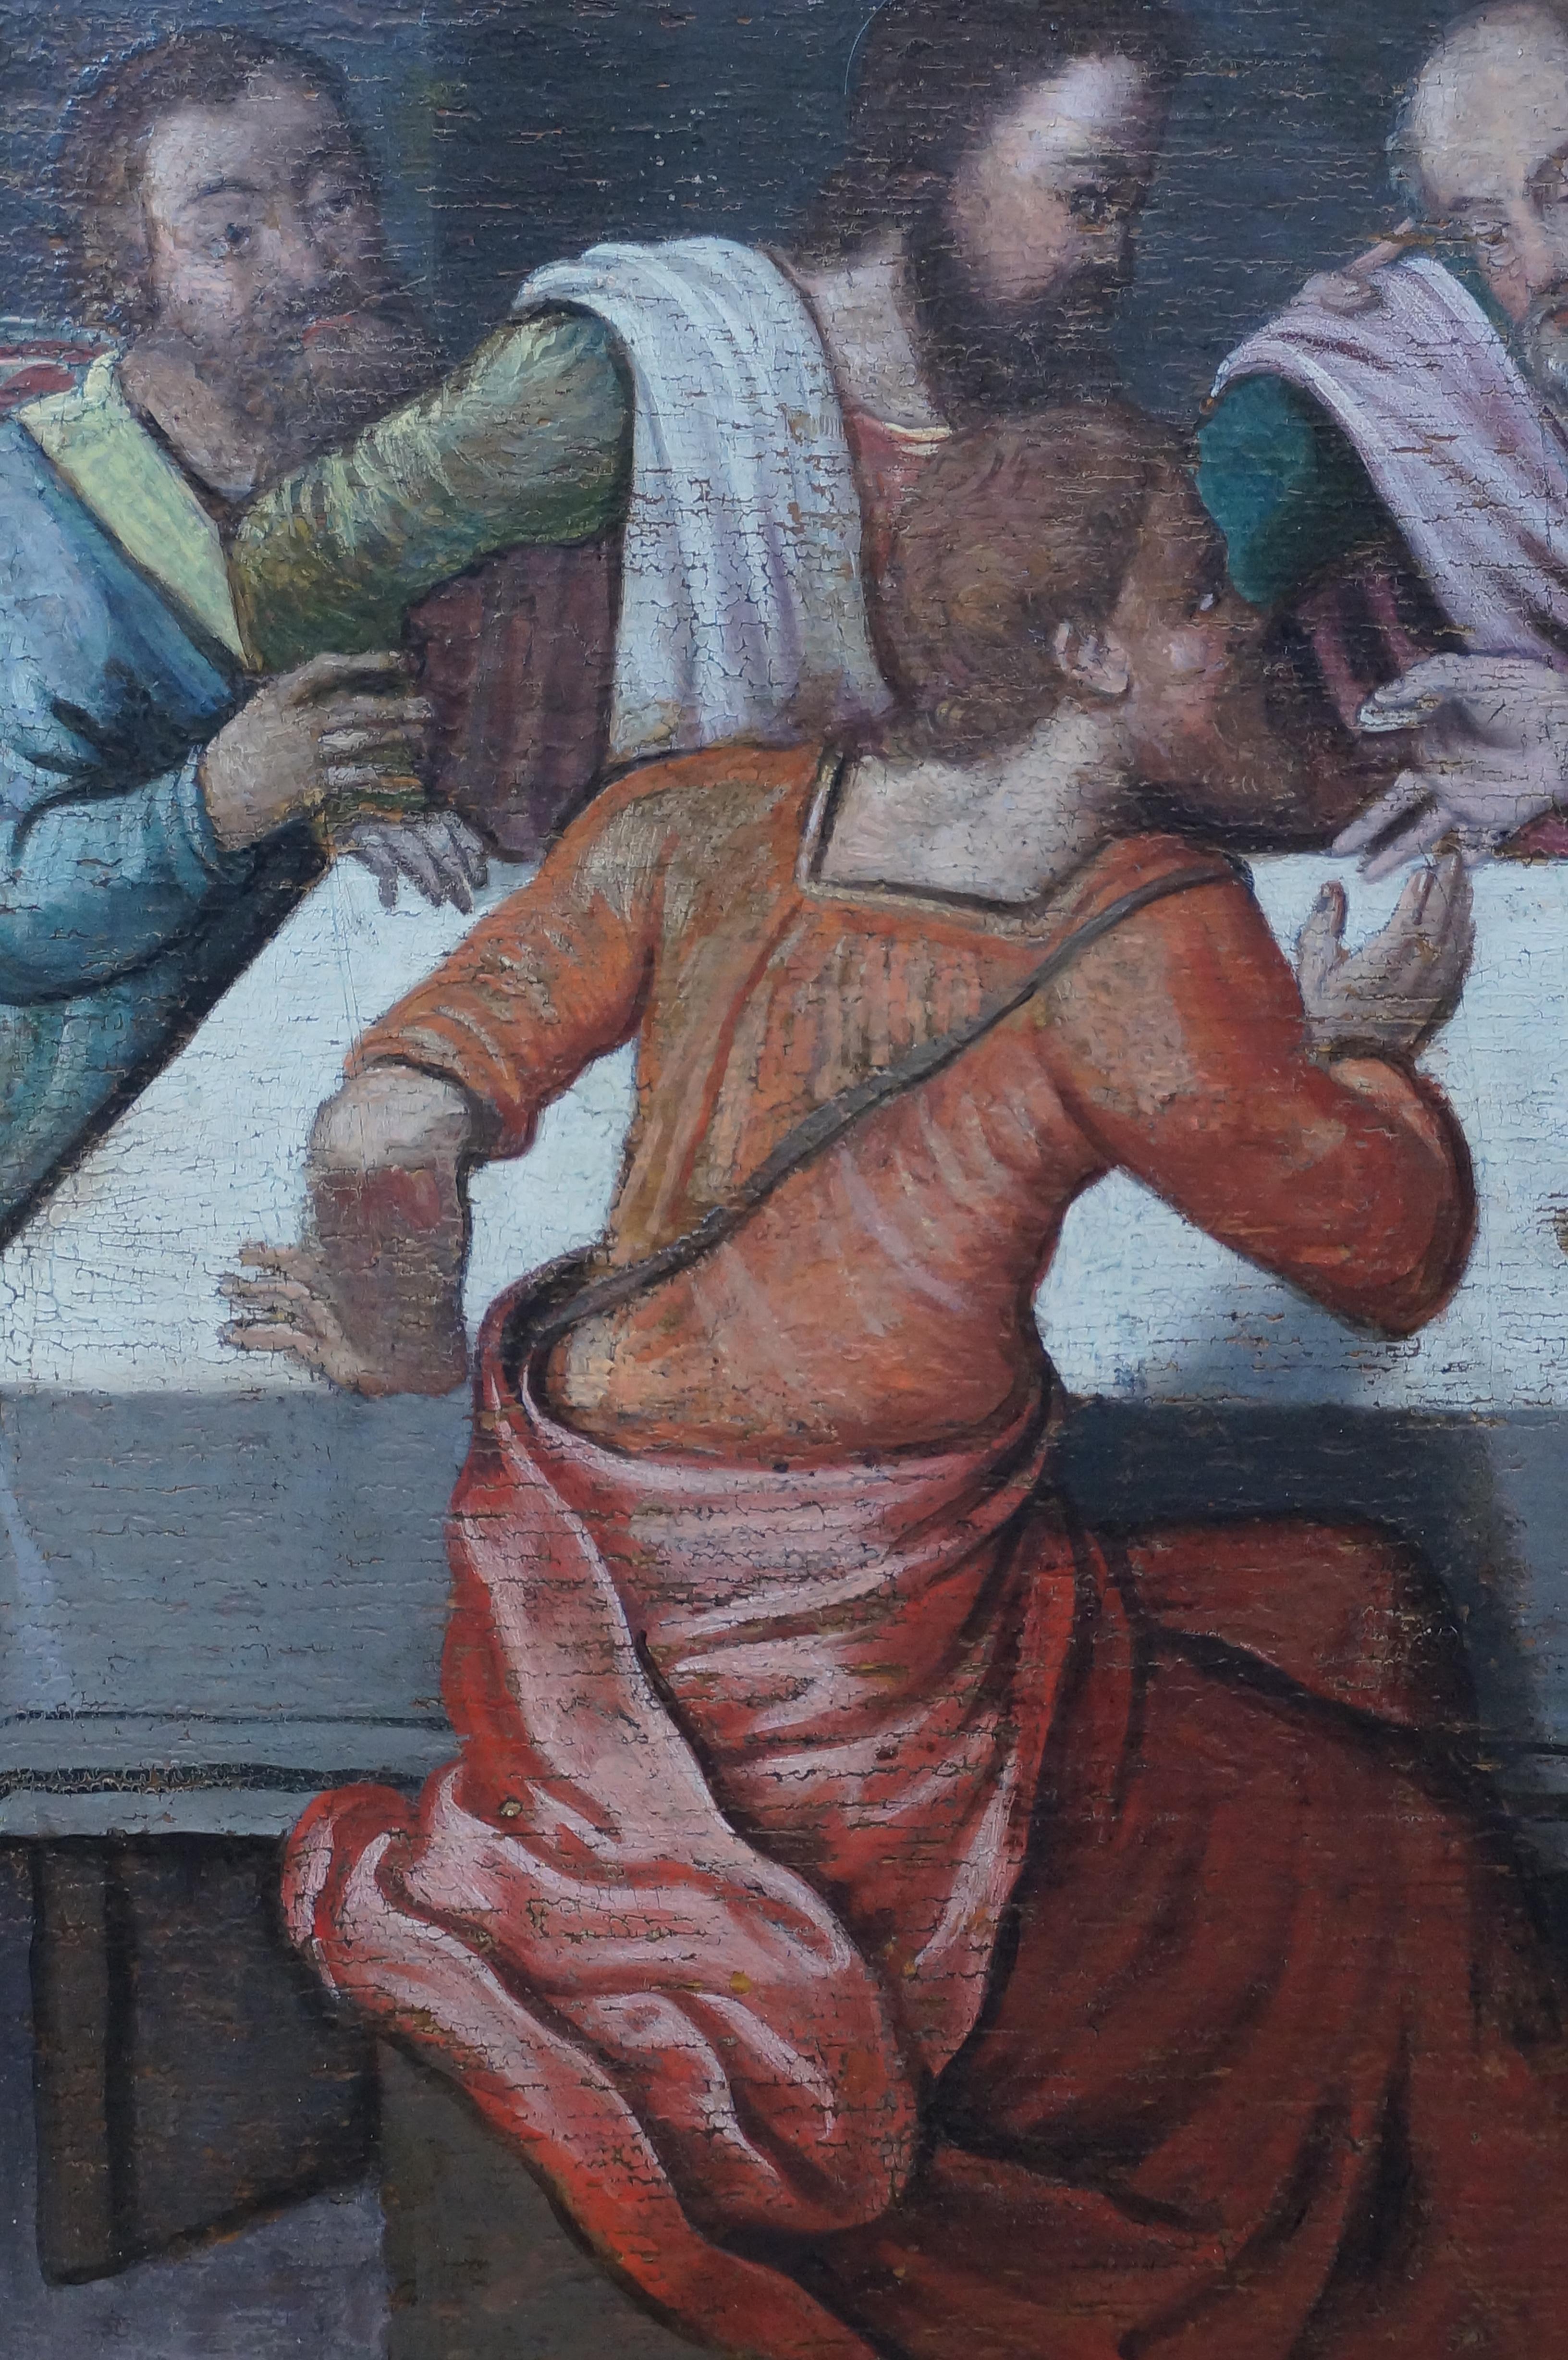 Anrique oil painting, Last Supper, German school, Renaissance, Late 16th c. 4